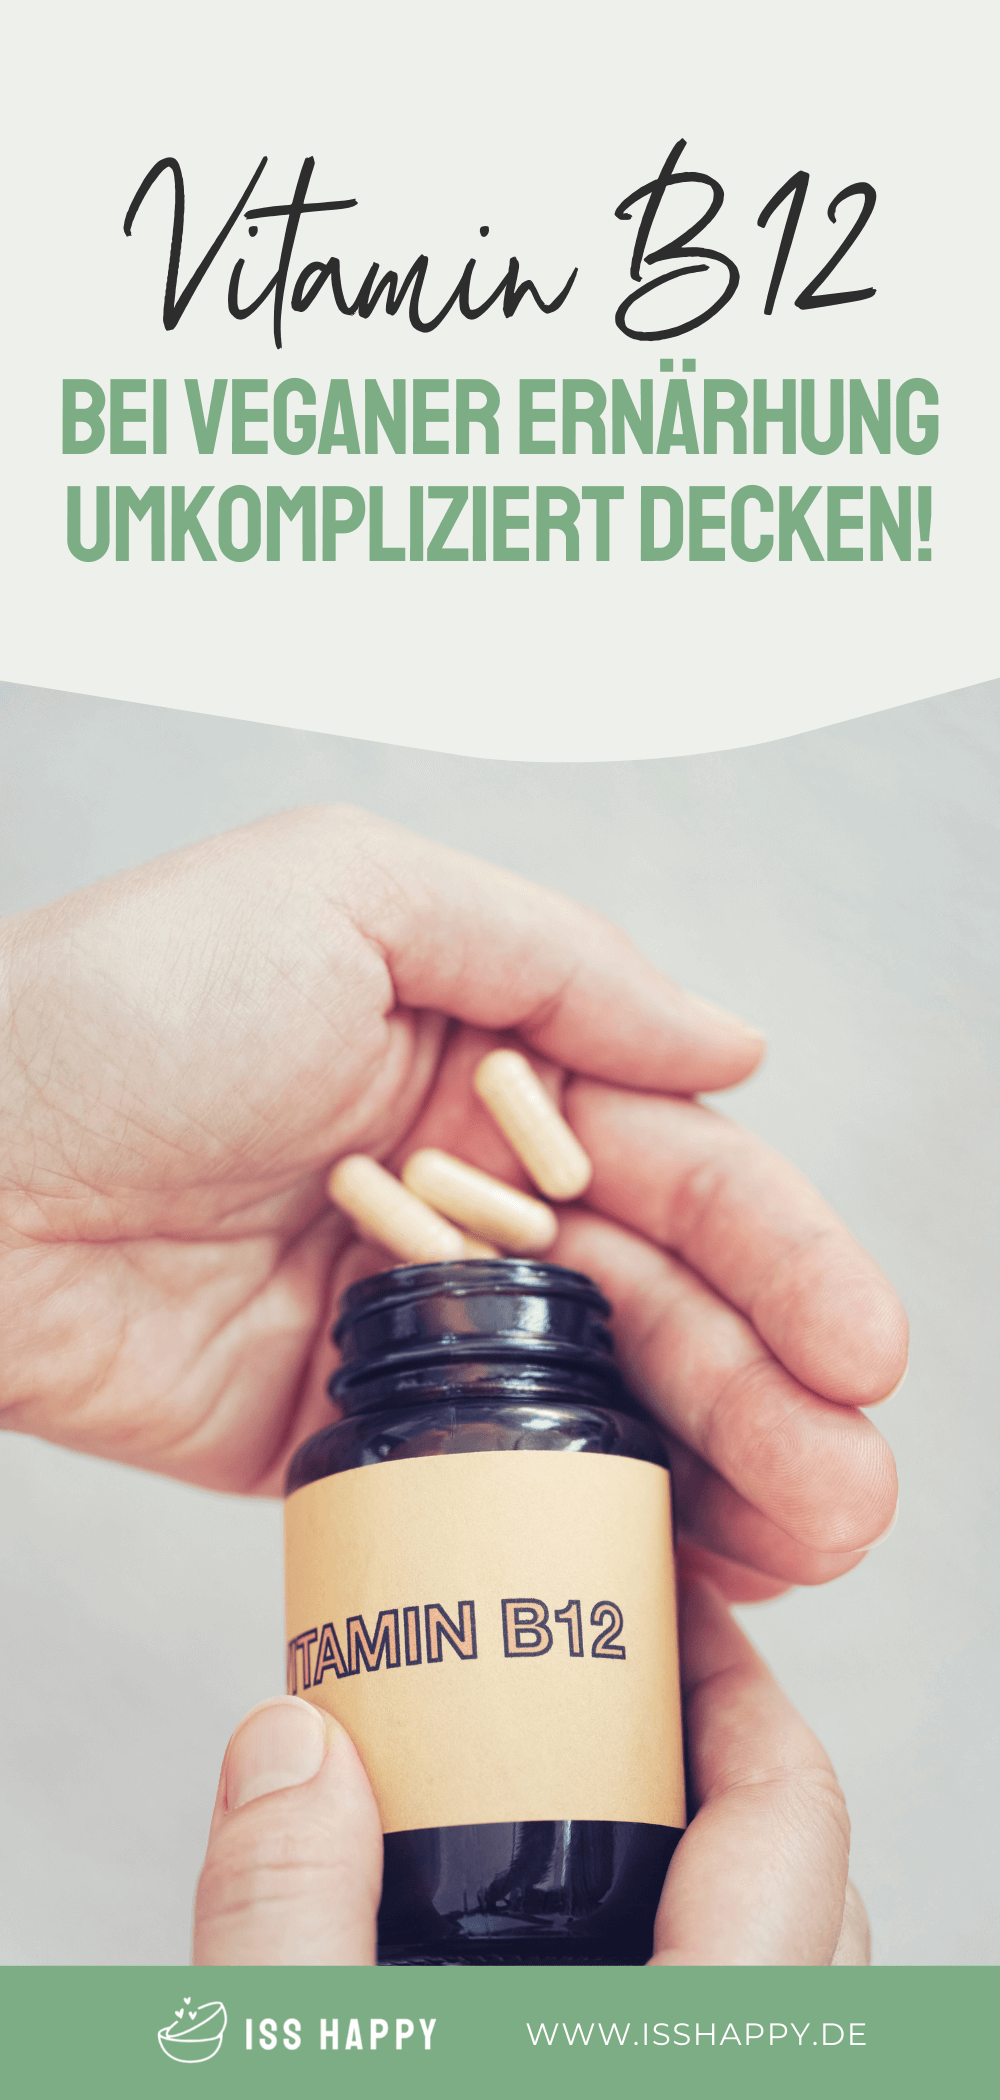 Vitamin B12-Mangel bei veganer Ernährung vermeiden!